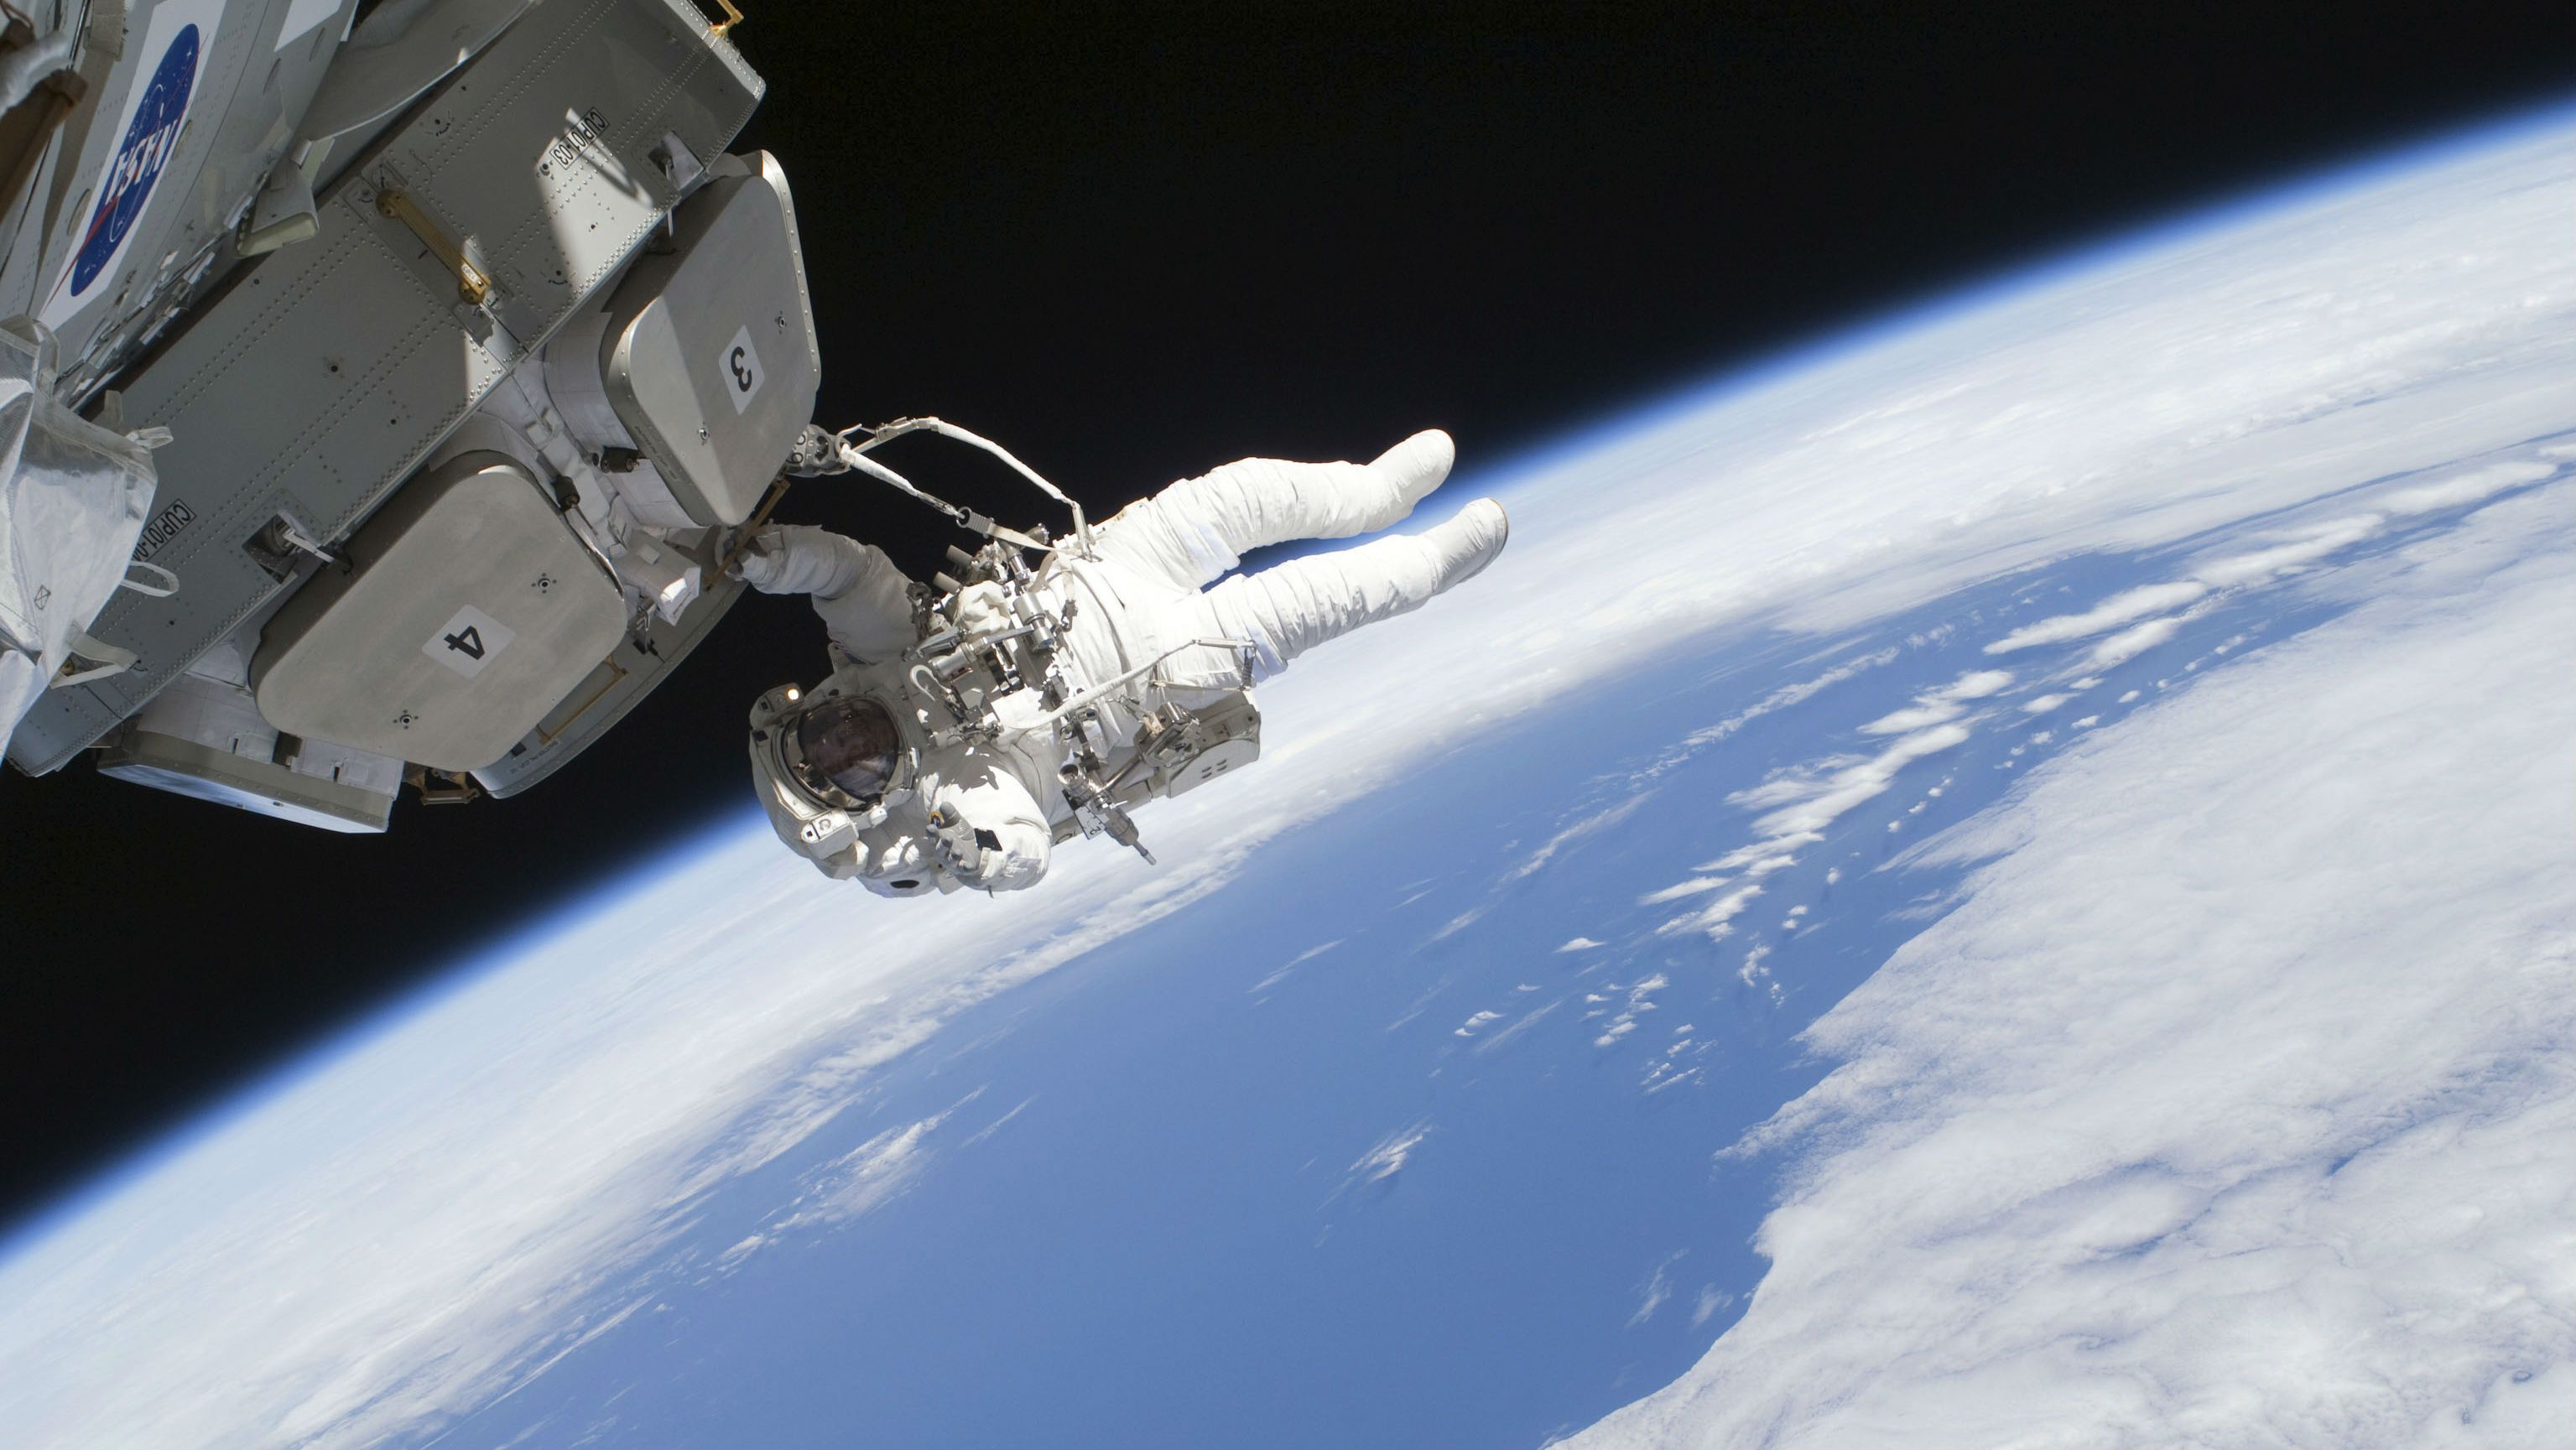 Should we live on Mars? NASA astronaut Ron Garan believes we should ...